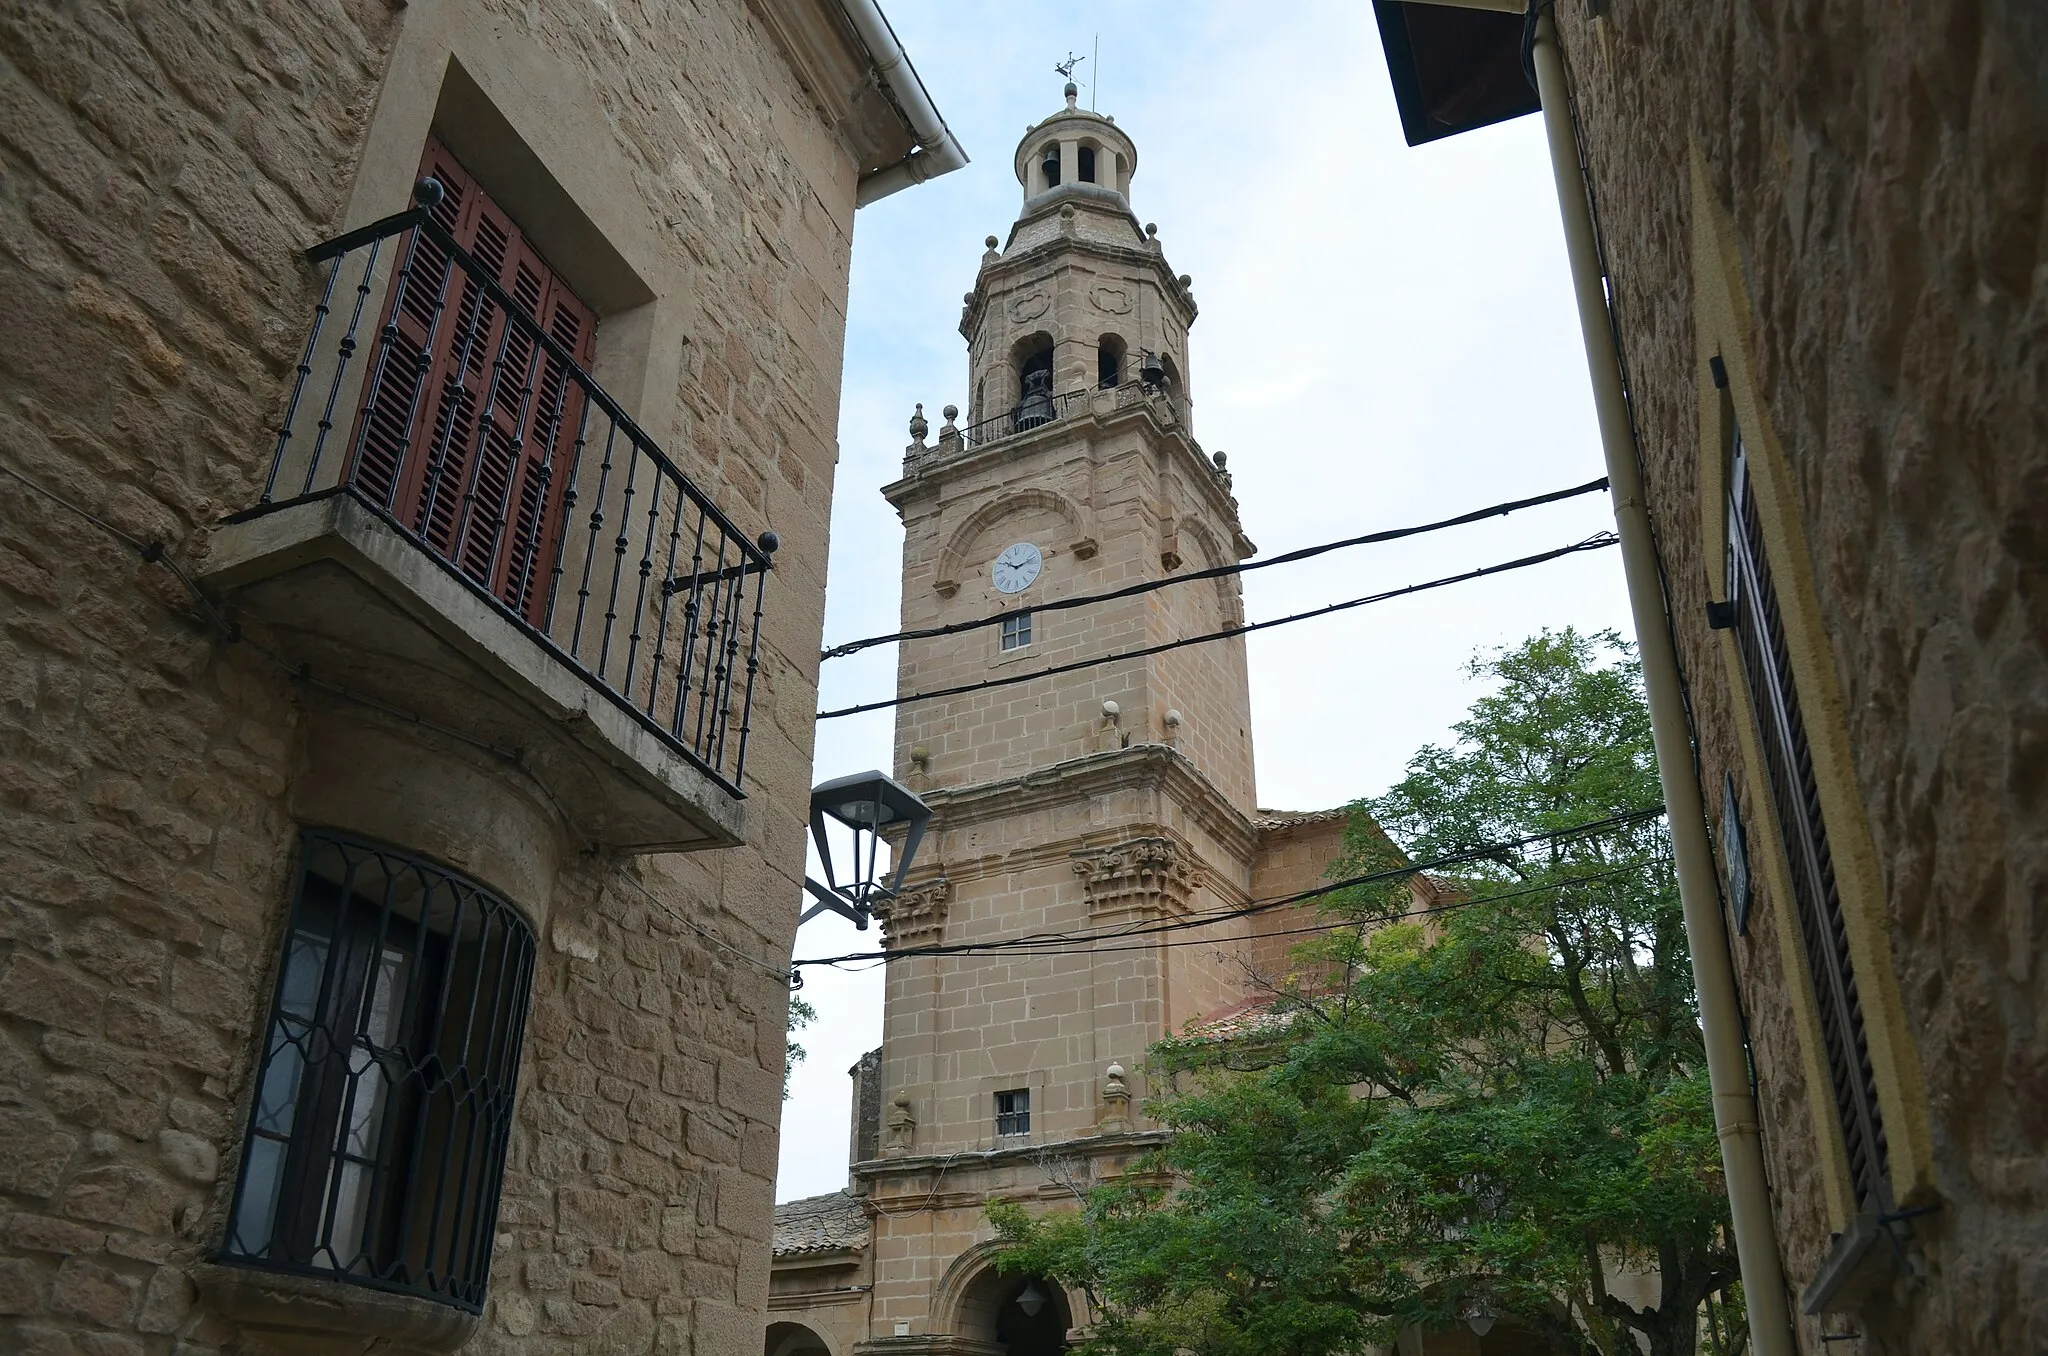 Photo showing: Vista de la torre de la Iglesia de San Cemeterio y San Celedonio, entre dos casas del pueblo con una ventana y balcón